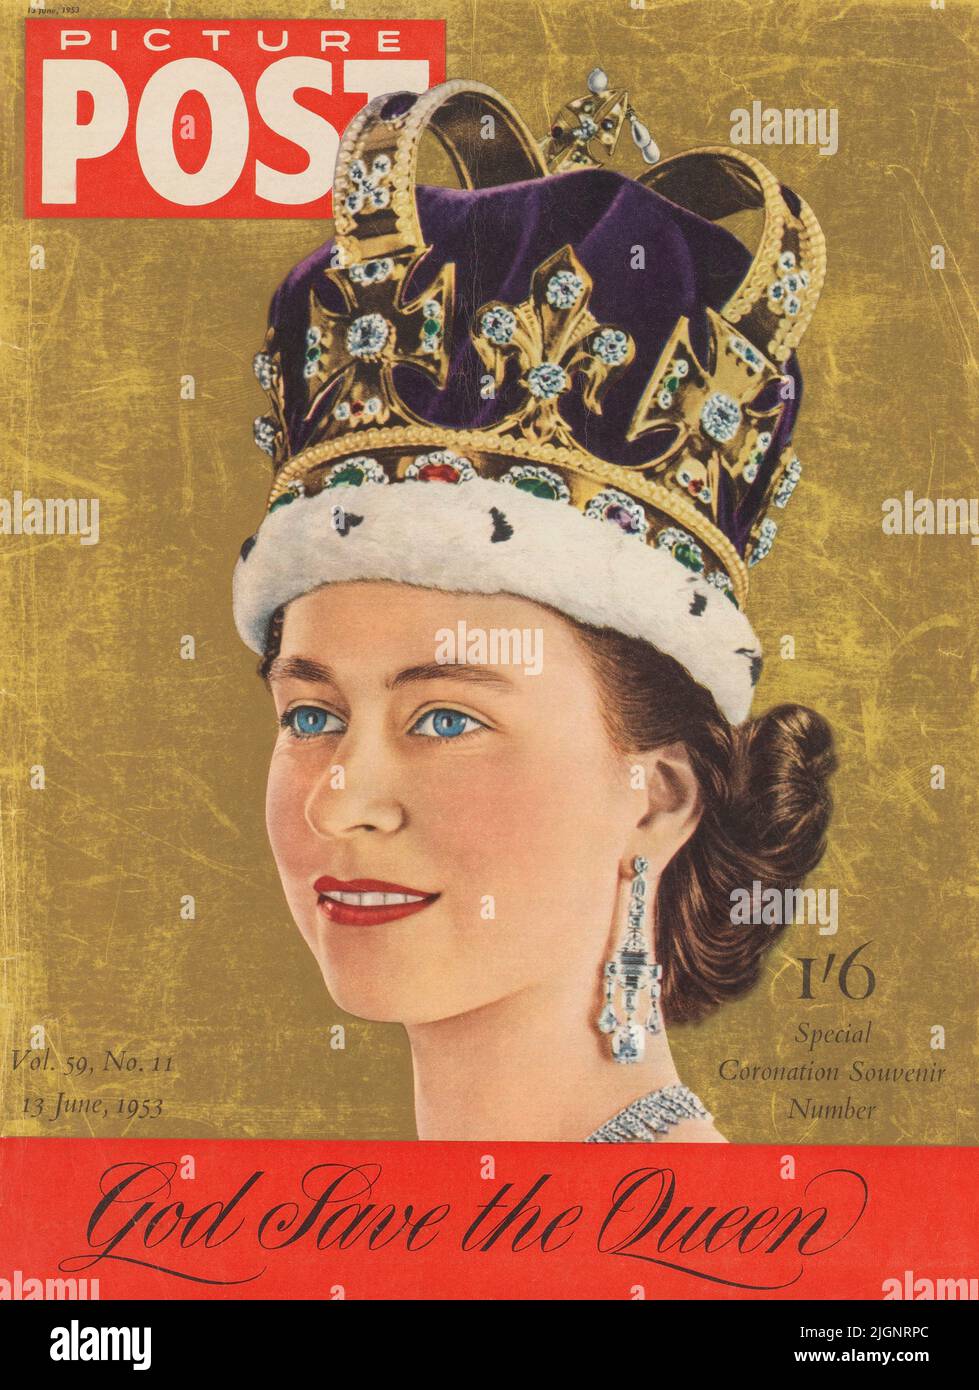 Speciale souvenir di incoronazione, 1953 giugno. Il tributo della rivista Picture Post alla Regina Elisabetta II (1926 - 2022) dopo la sua incoronazione. SOLO EDITORIALE. Foto Stock